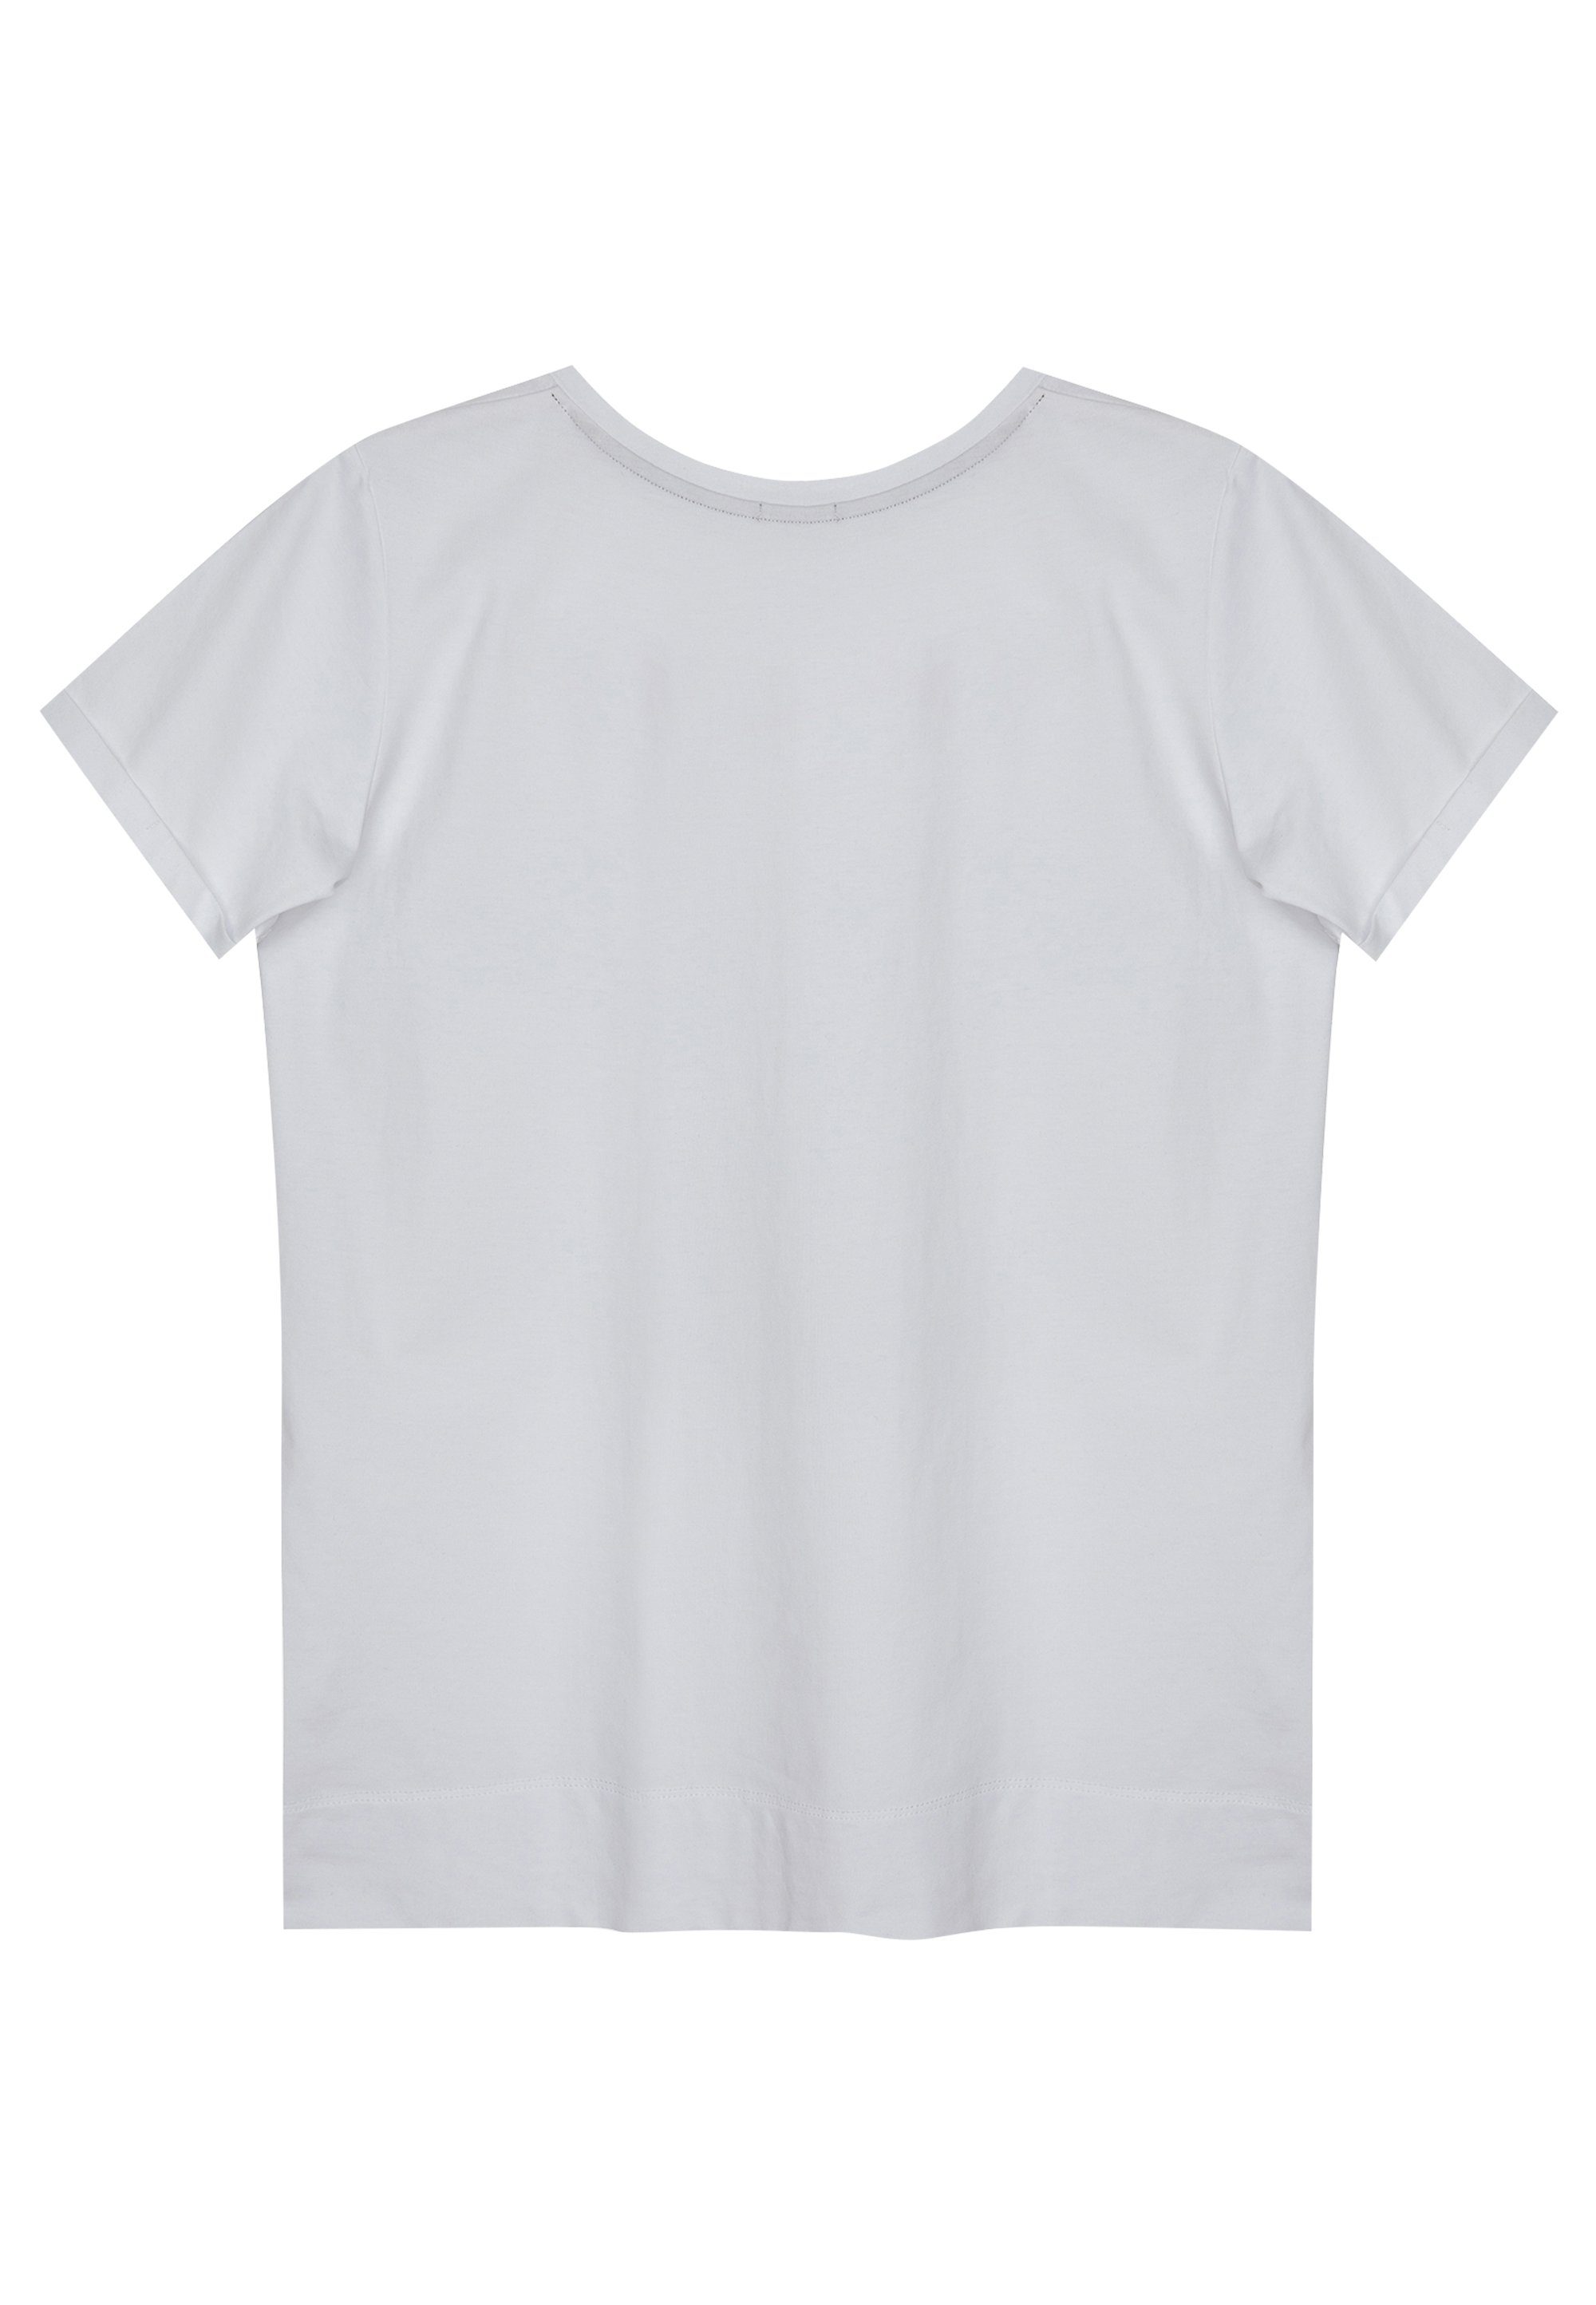 Gulliver stylischem T-Shirt mit Frontprint